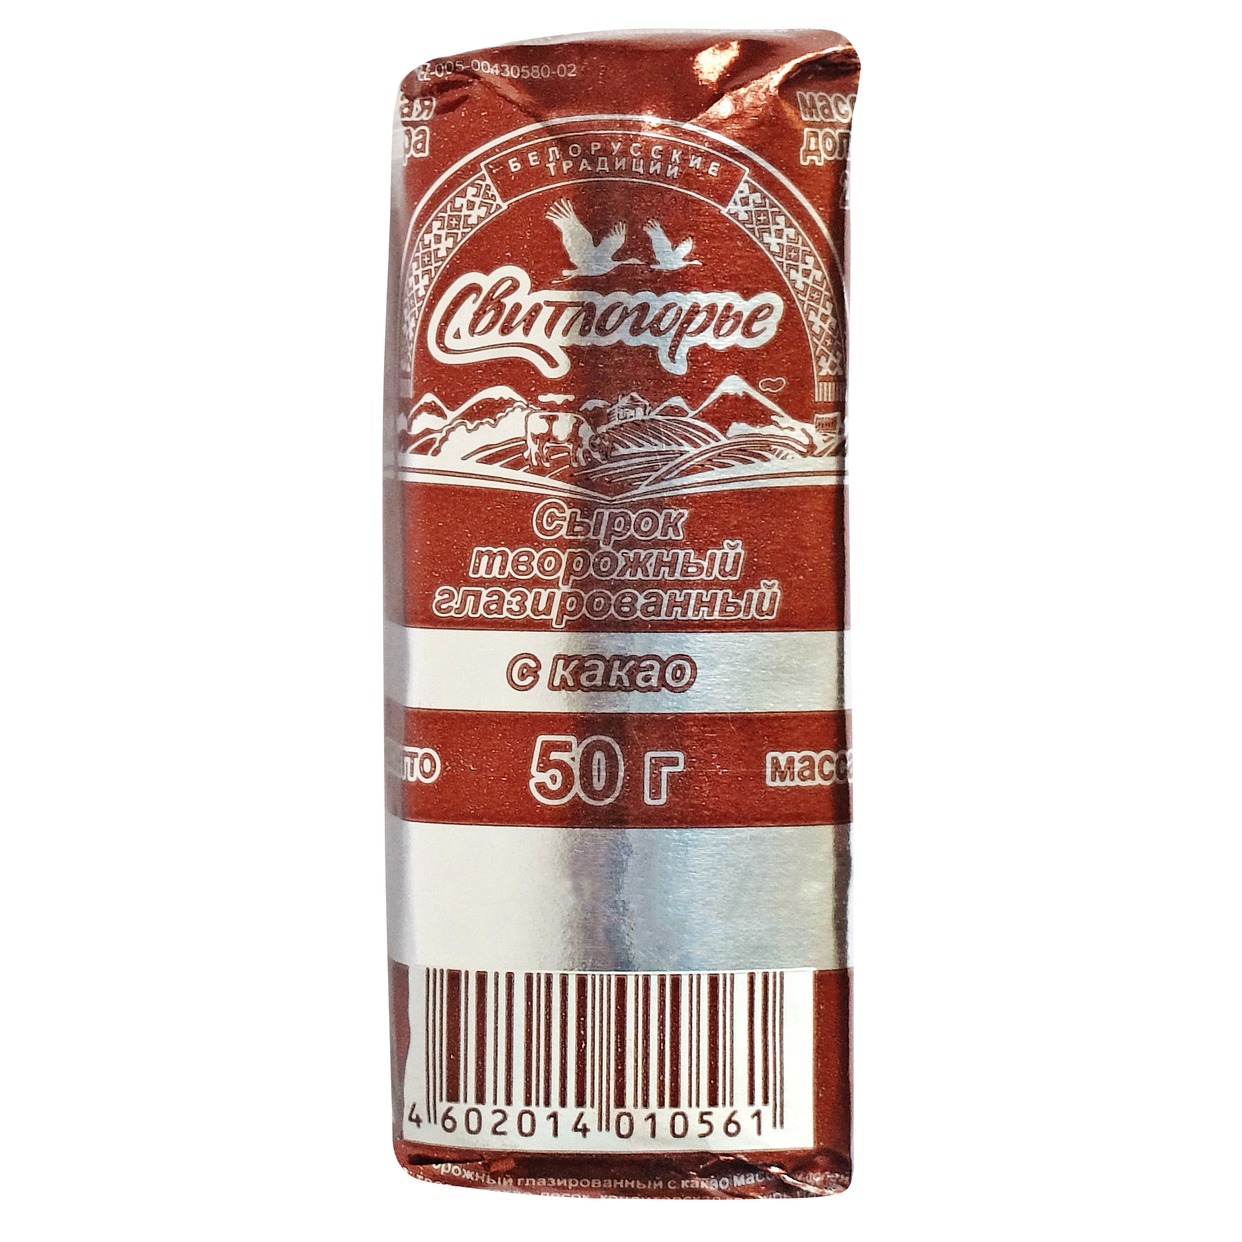 Сырок Свитлогорье, творожный глазированный, какао, 26%, 50 г по акции в Пятерочке